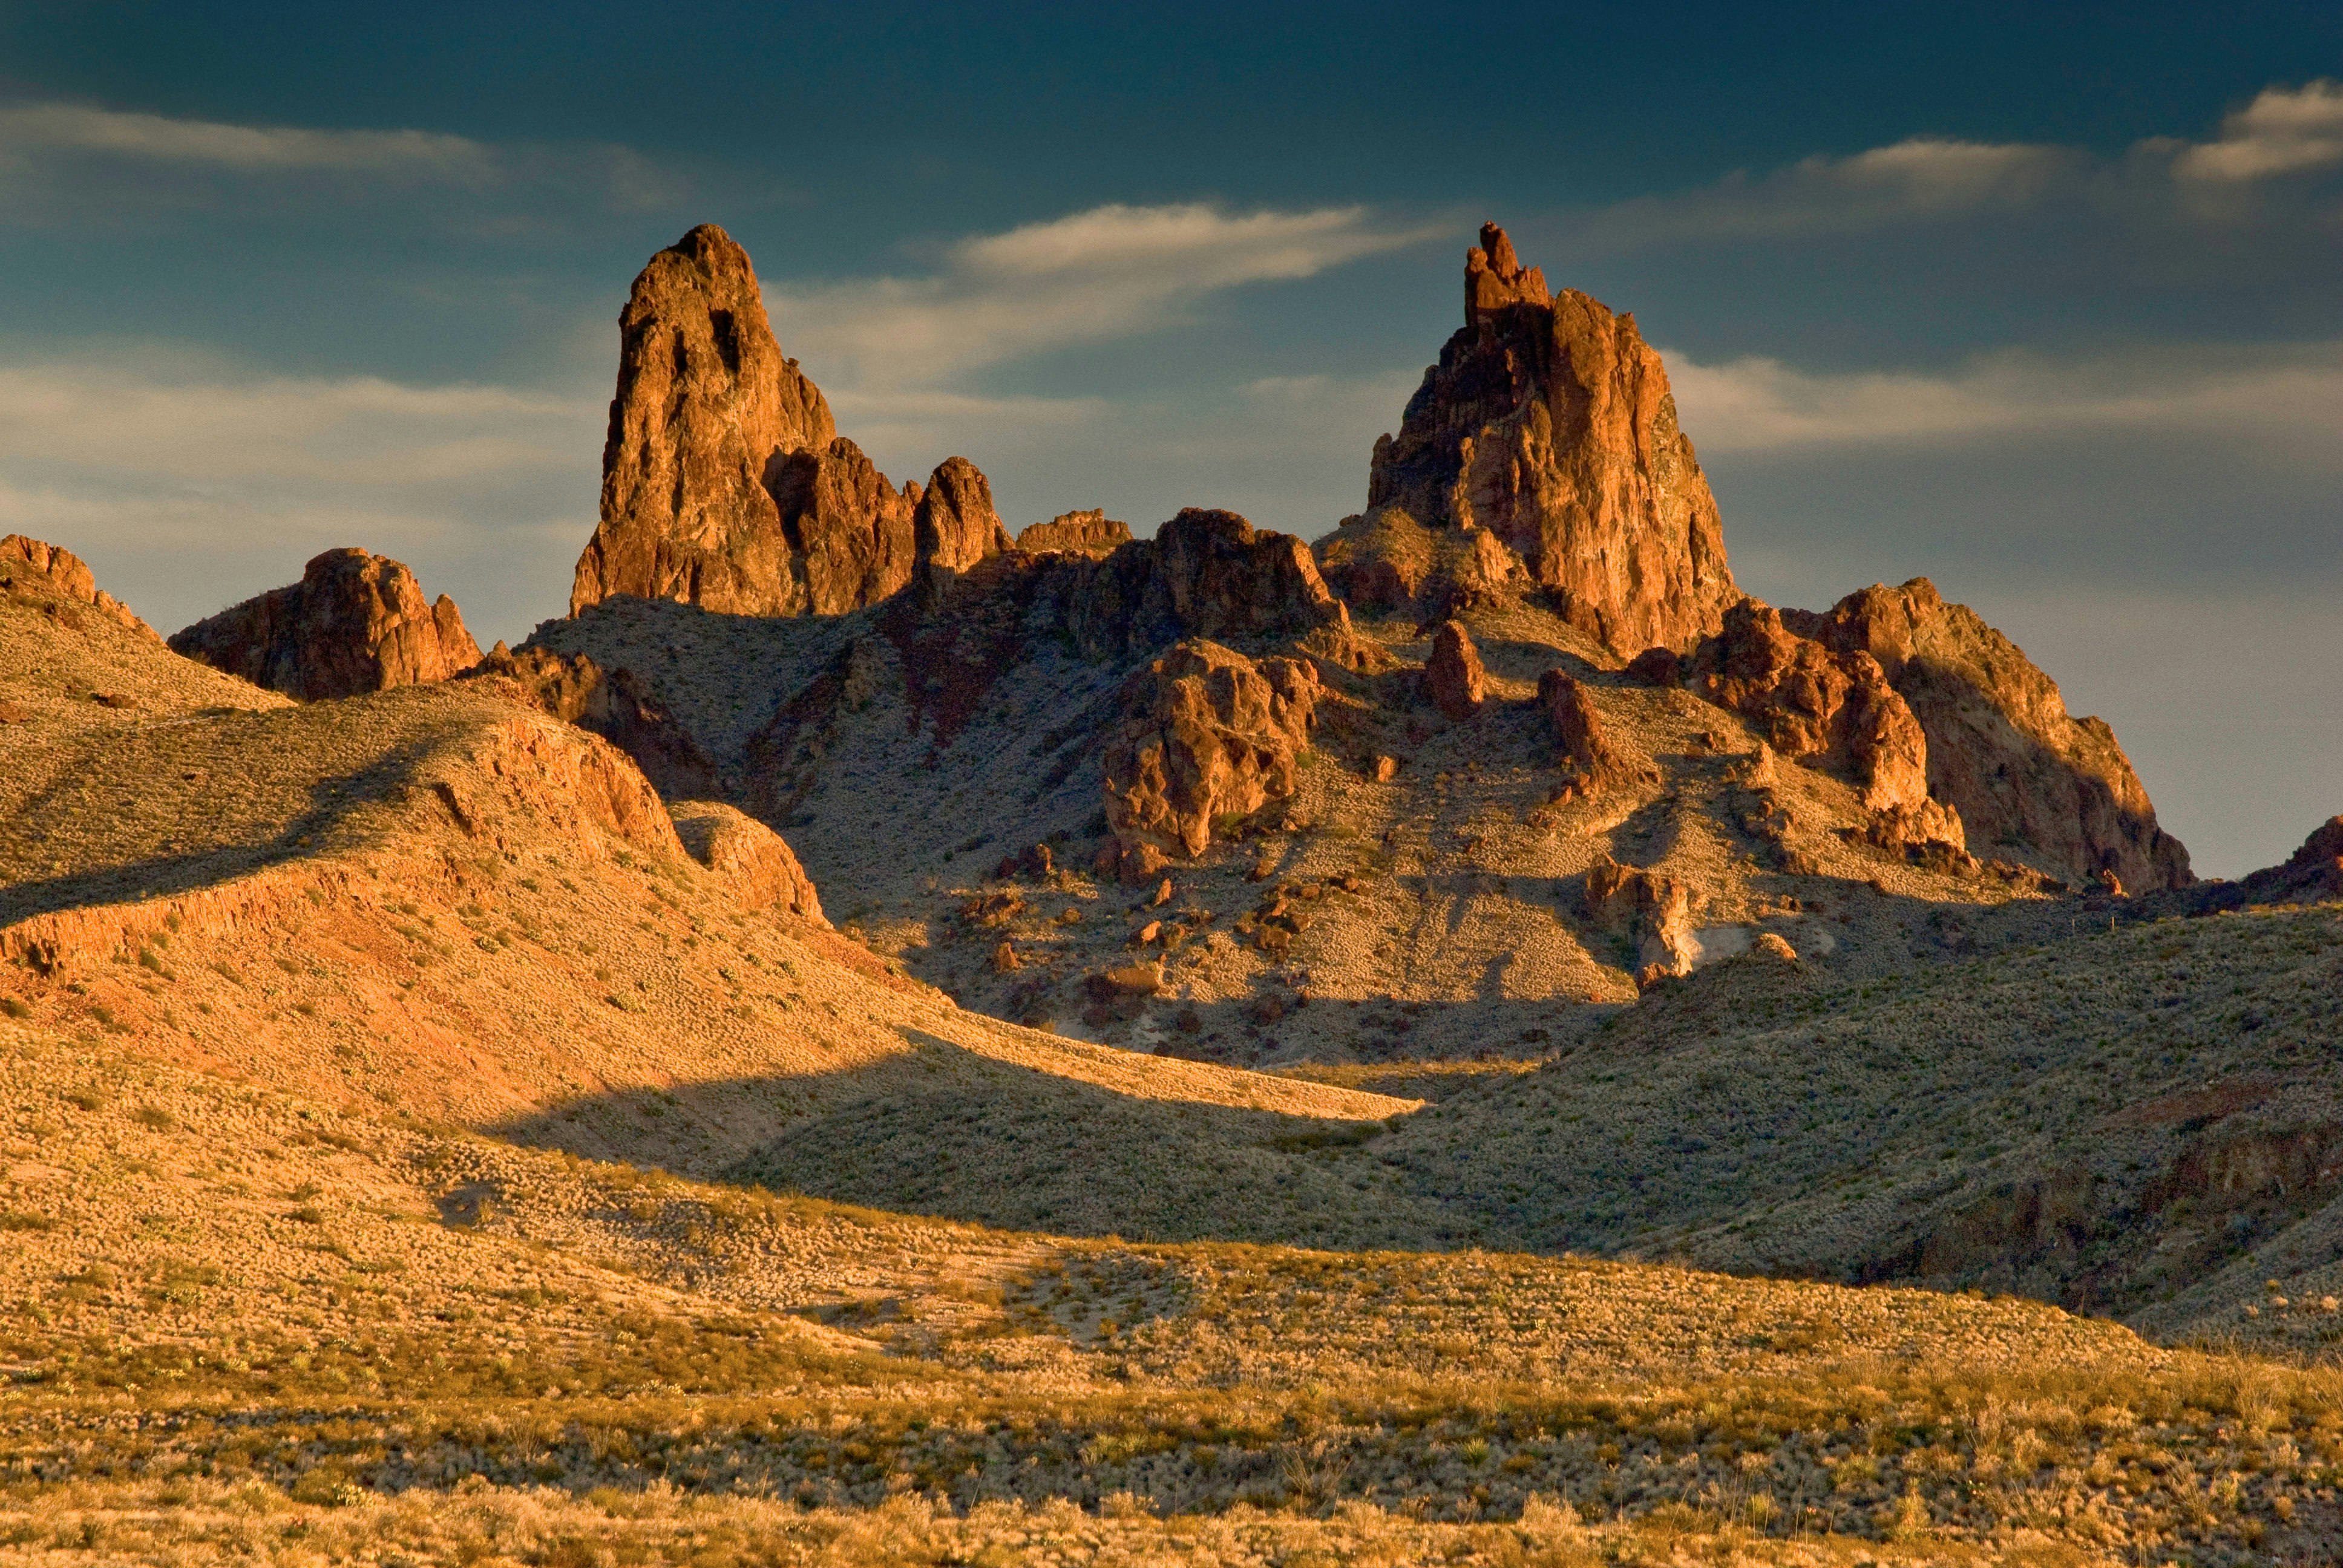 Desert rock formations in a golden sunlight